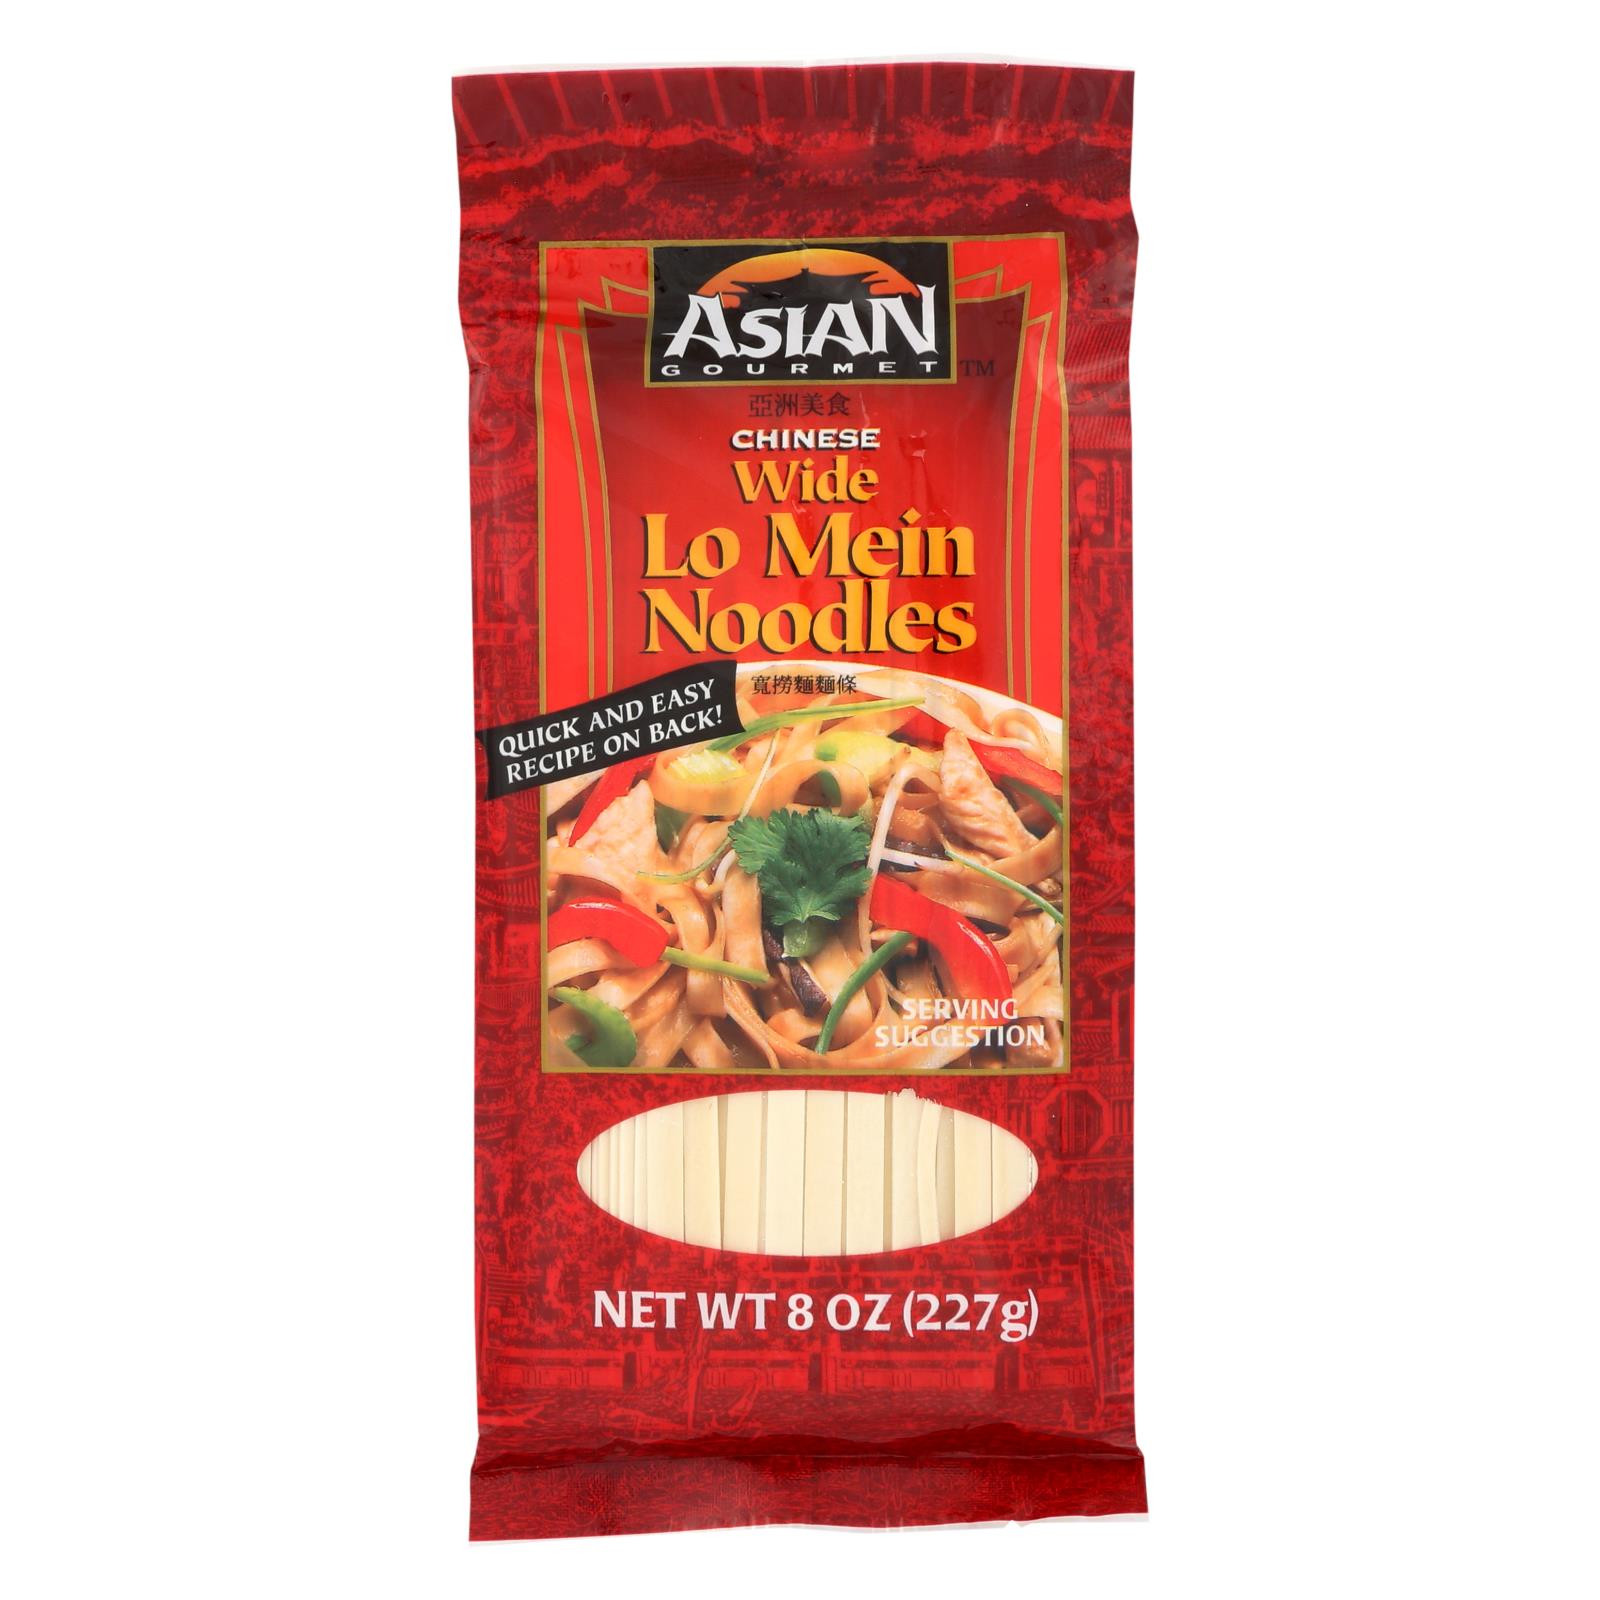 Asian Noodles Walmart
 Asian Gourmet Noodles Lo Mein Case 12 8 Oz